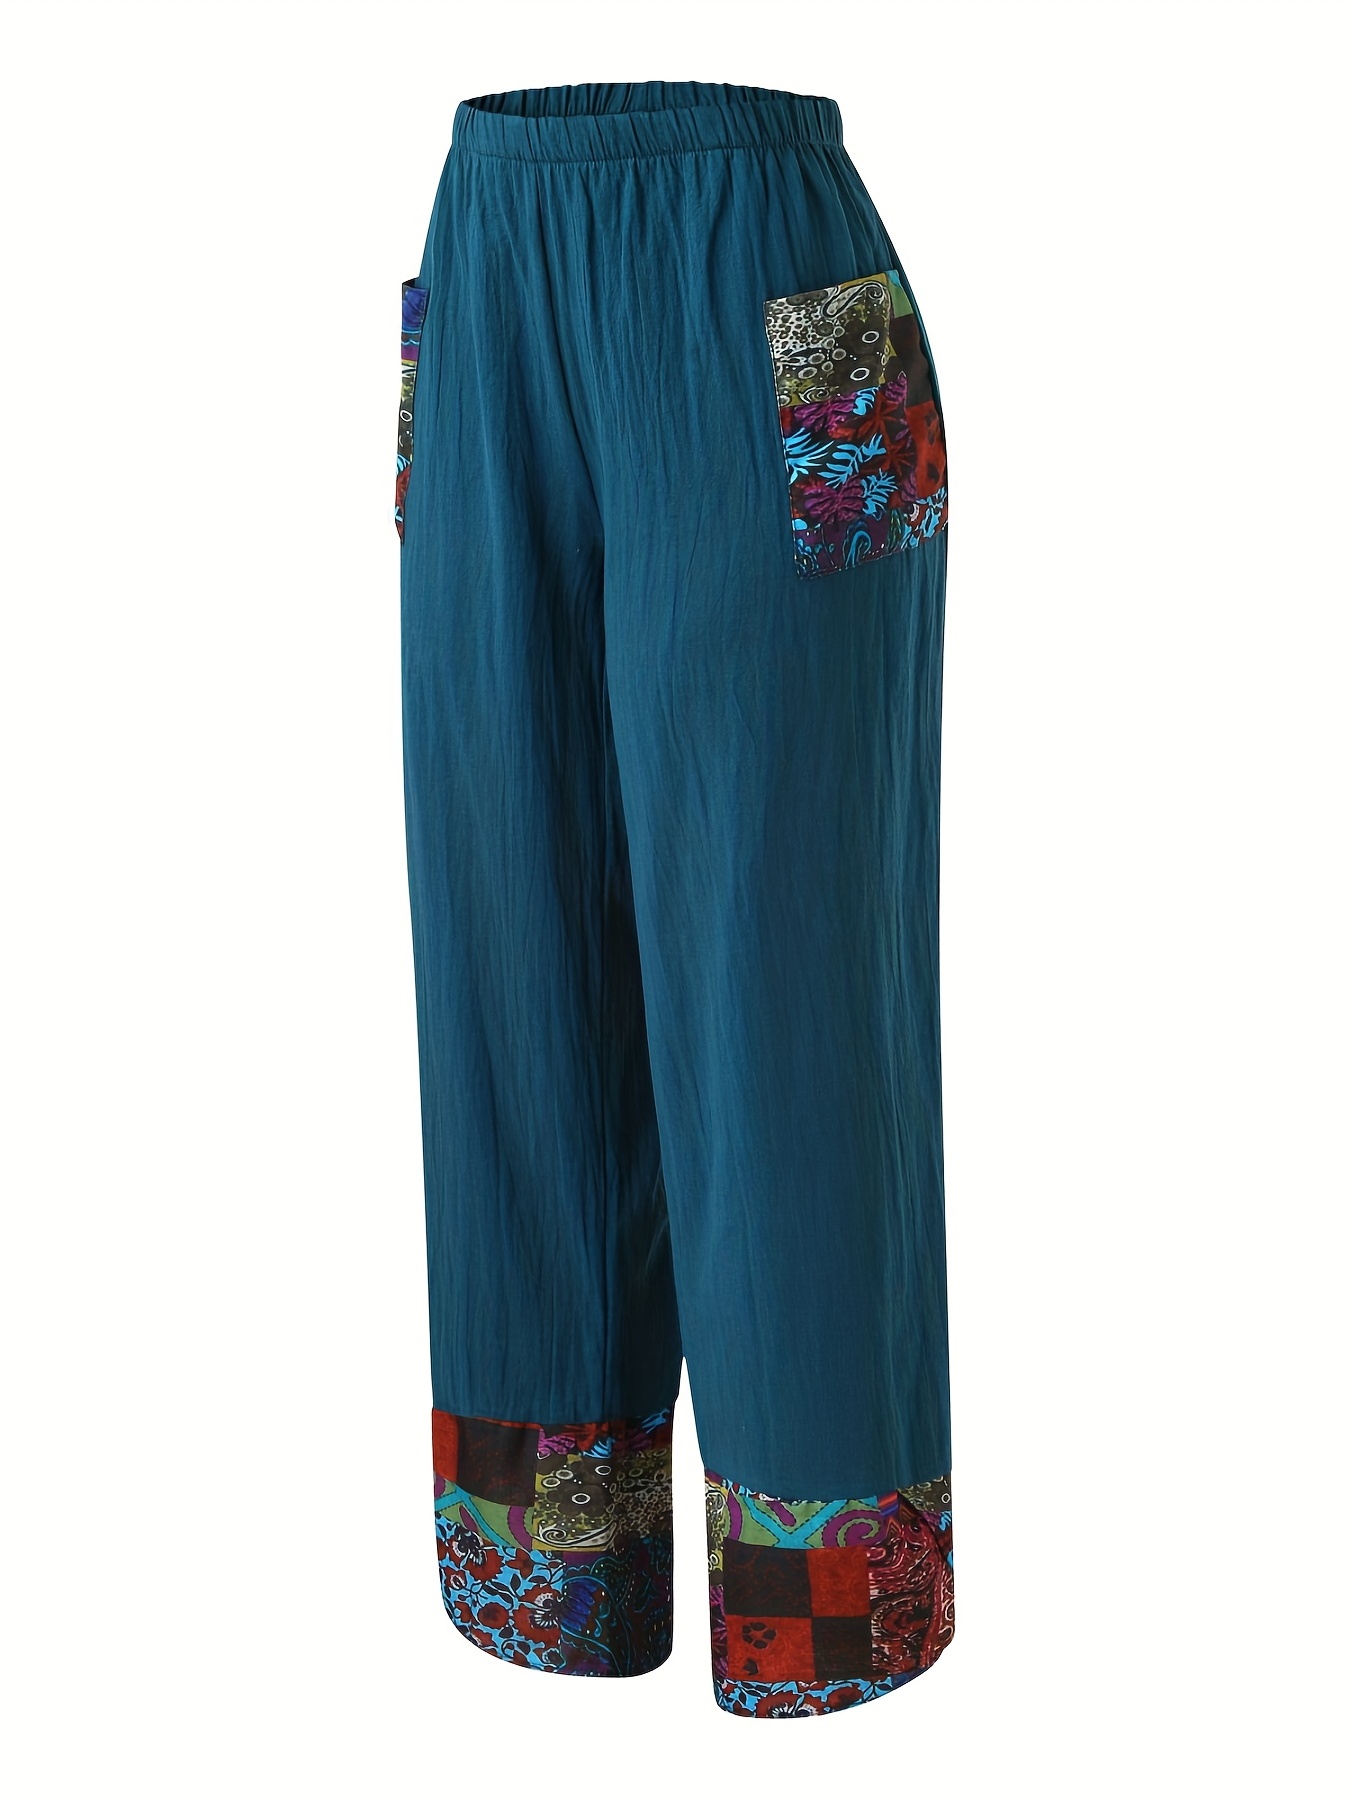 Cotton Baggy Yoga Pants, Harem Pants Women, High Waist Pants, Hippie Pants,  Yoga Trousers, Hippy Baggy Pants, Boho Pants, Casual Pants,UK